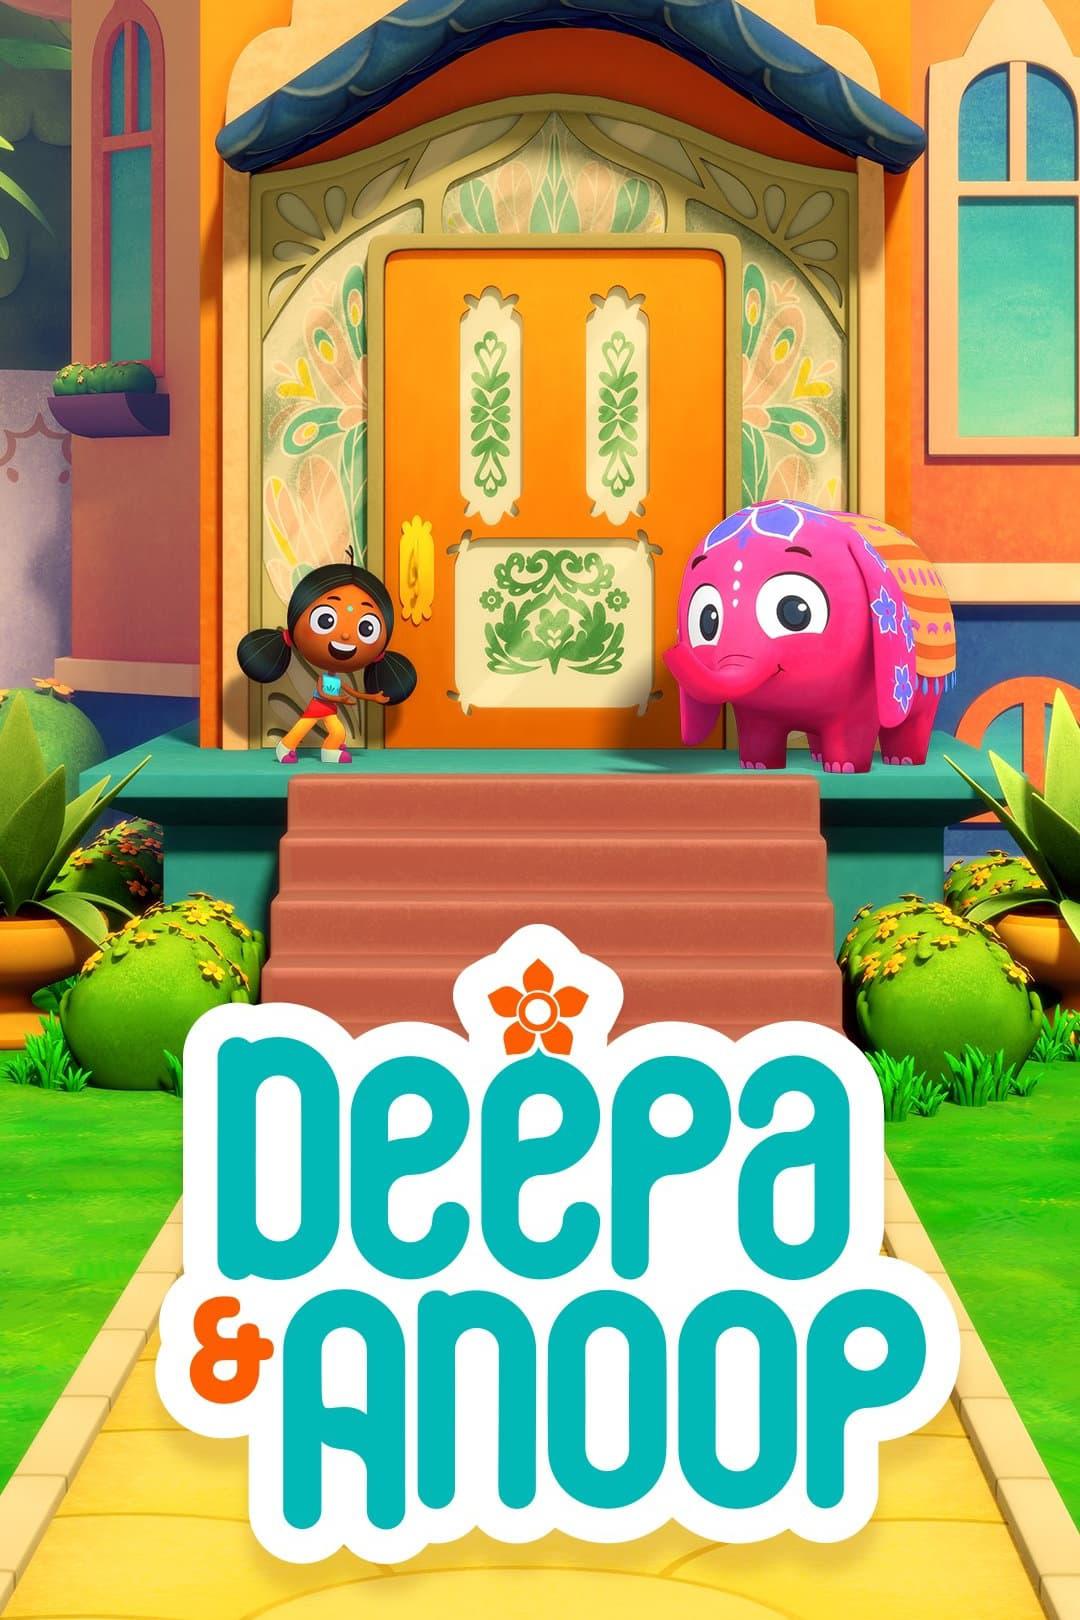 TV ratings for Deepa & Anoop in Spain. Netflix TV series